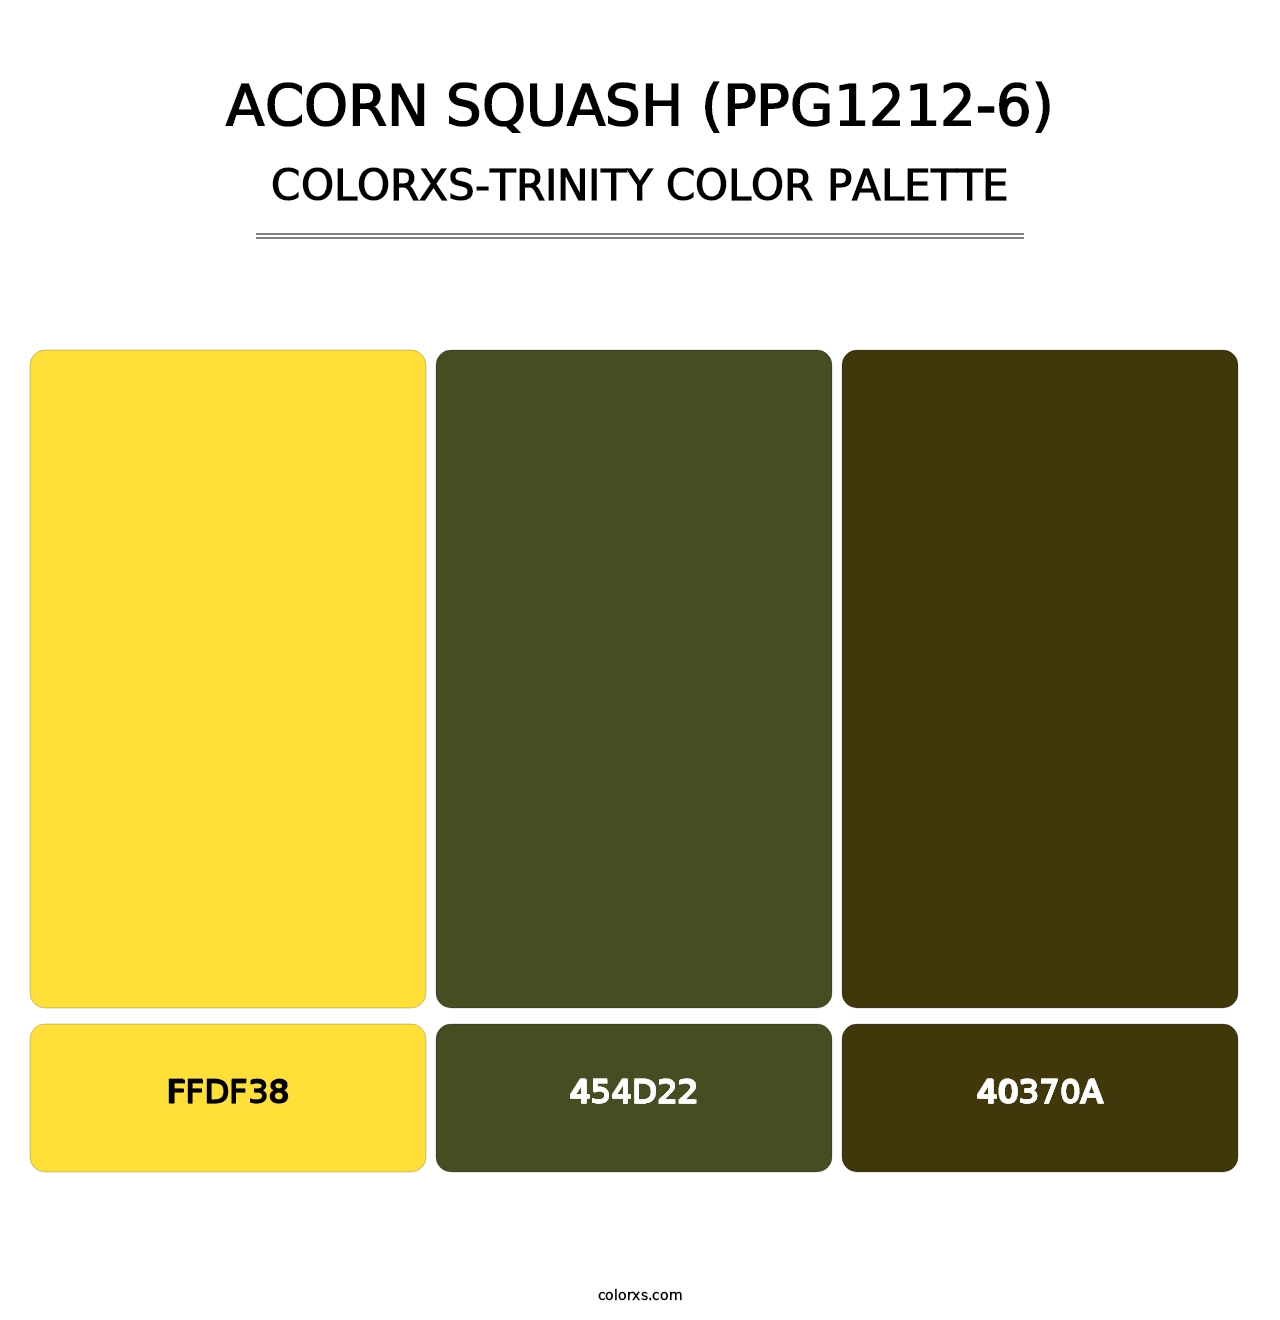 Acorn Squash (PPG1212-6) - Colorxs Trinity Palette